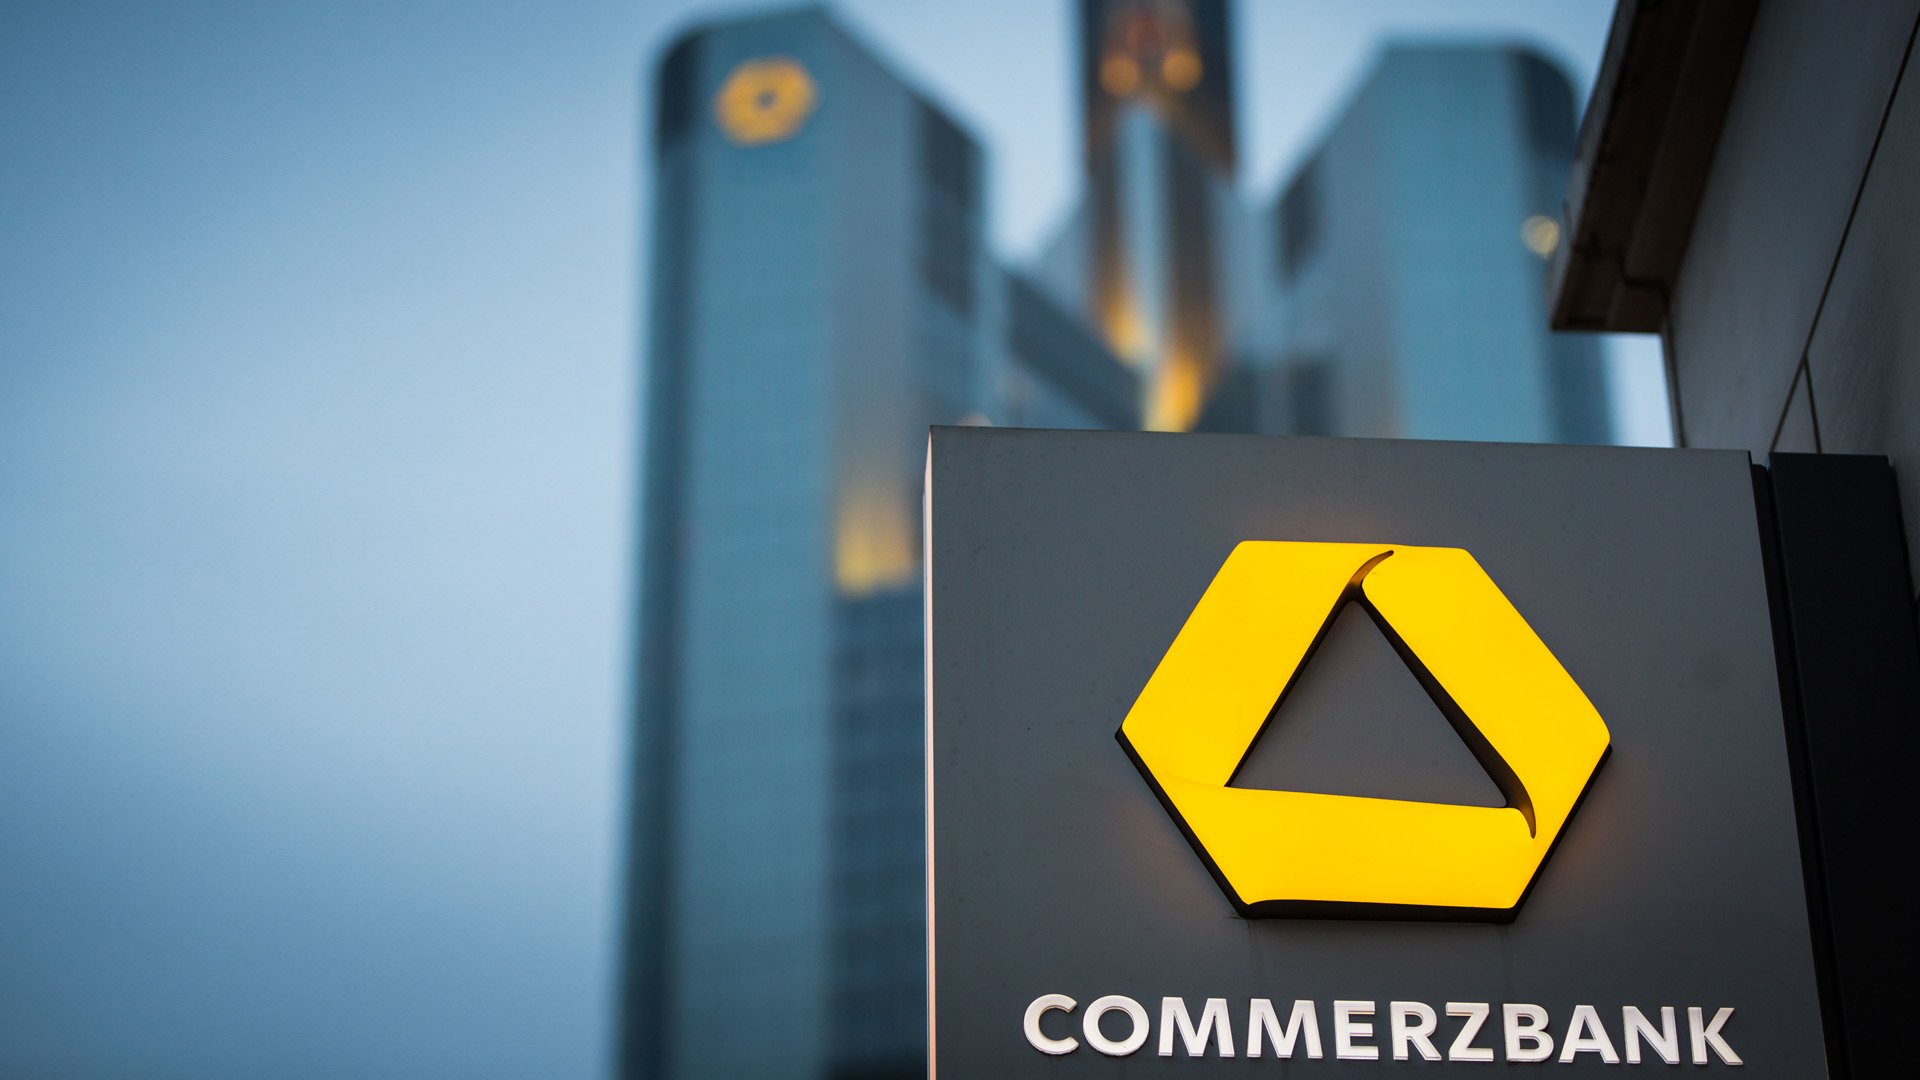  Şeful Commerzbank din Germania se teme de valul de falimente generat de sancţiunilor impuse Rusiei